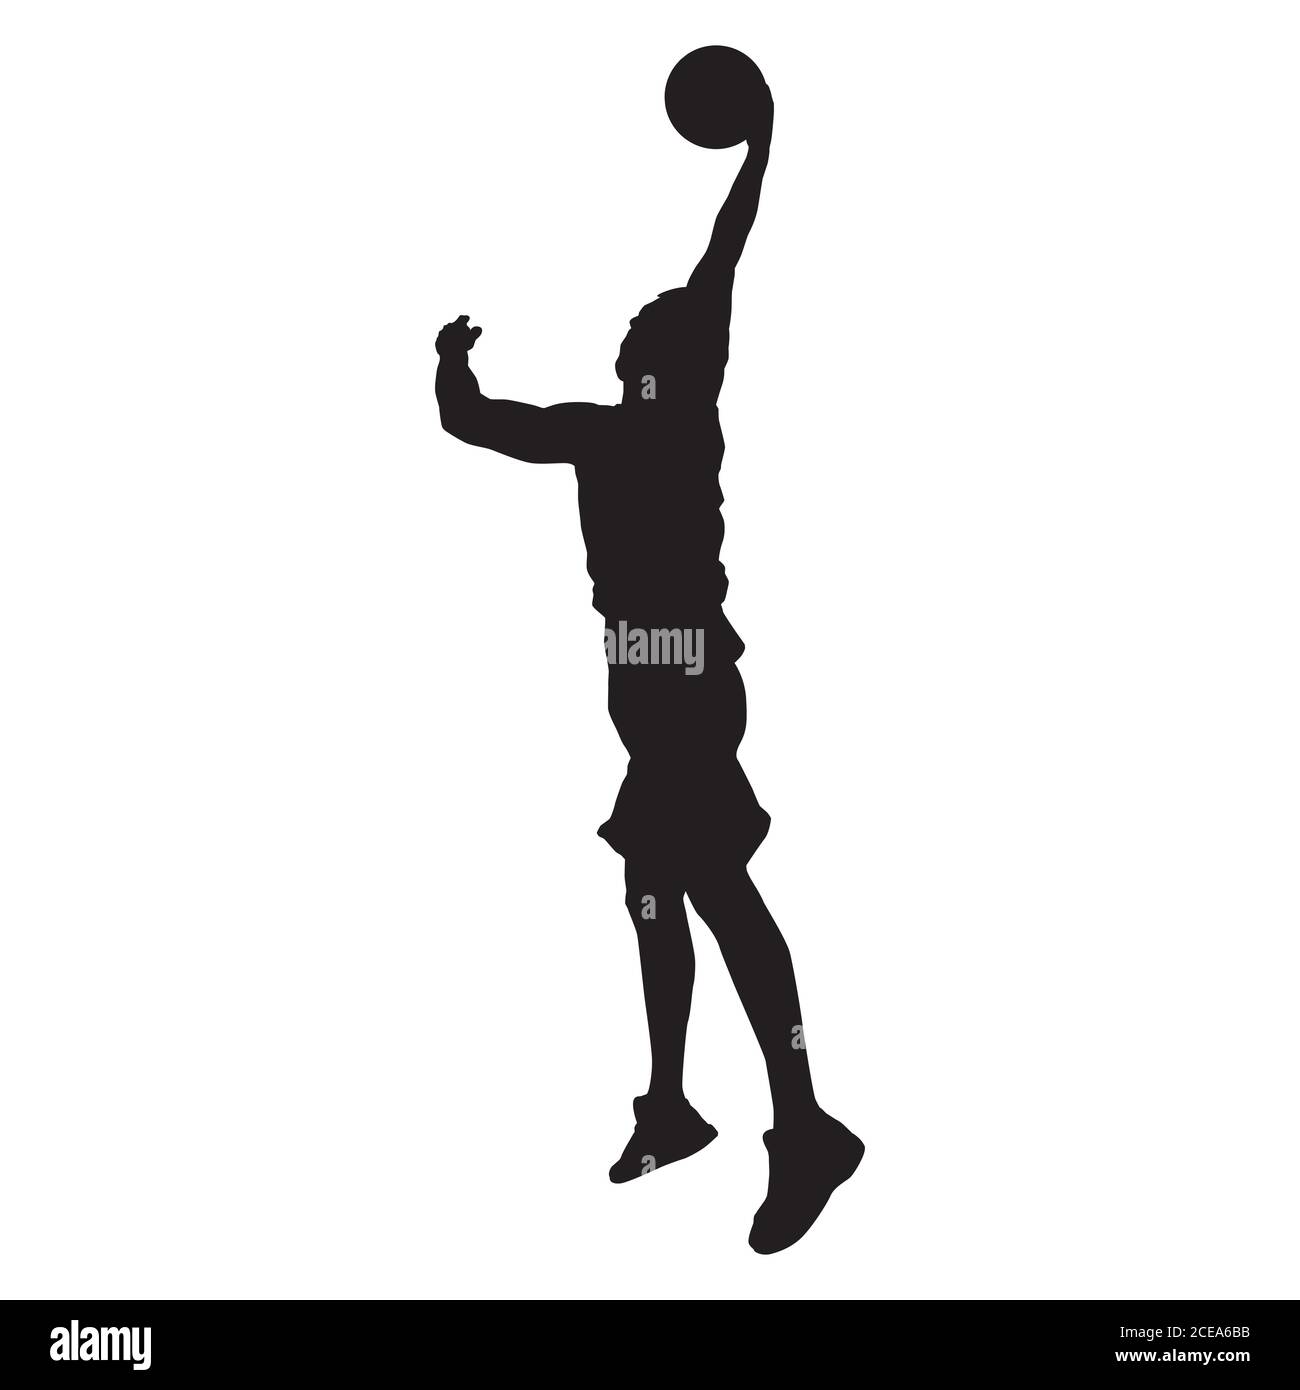 Basketball player shooting Stock Vector Images - Alamy